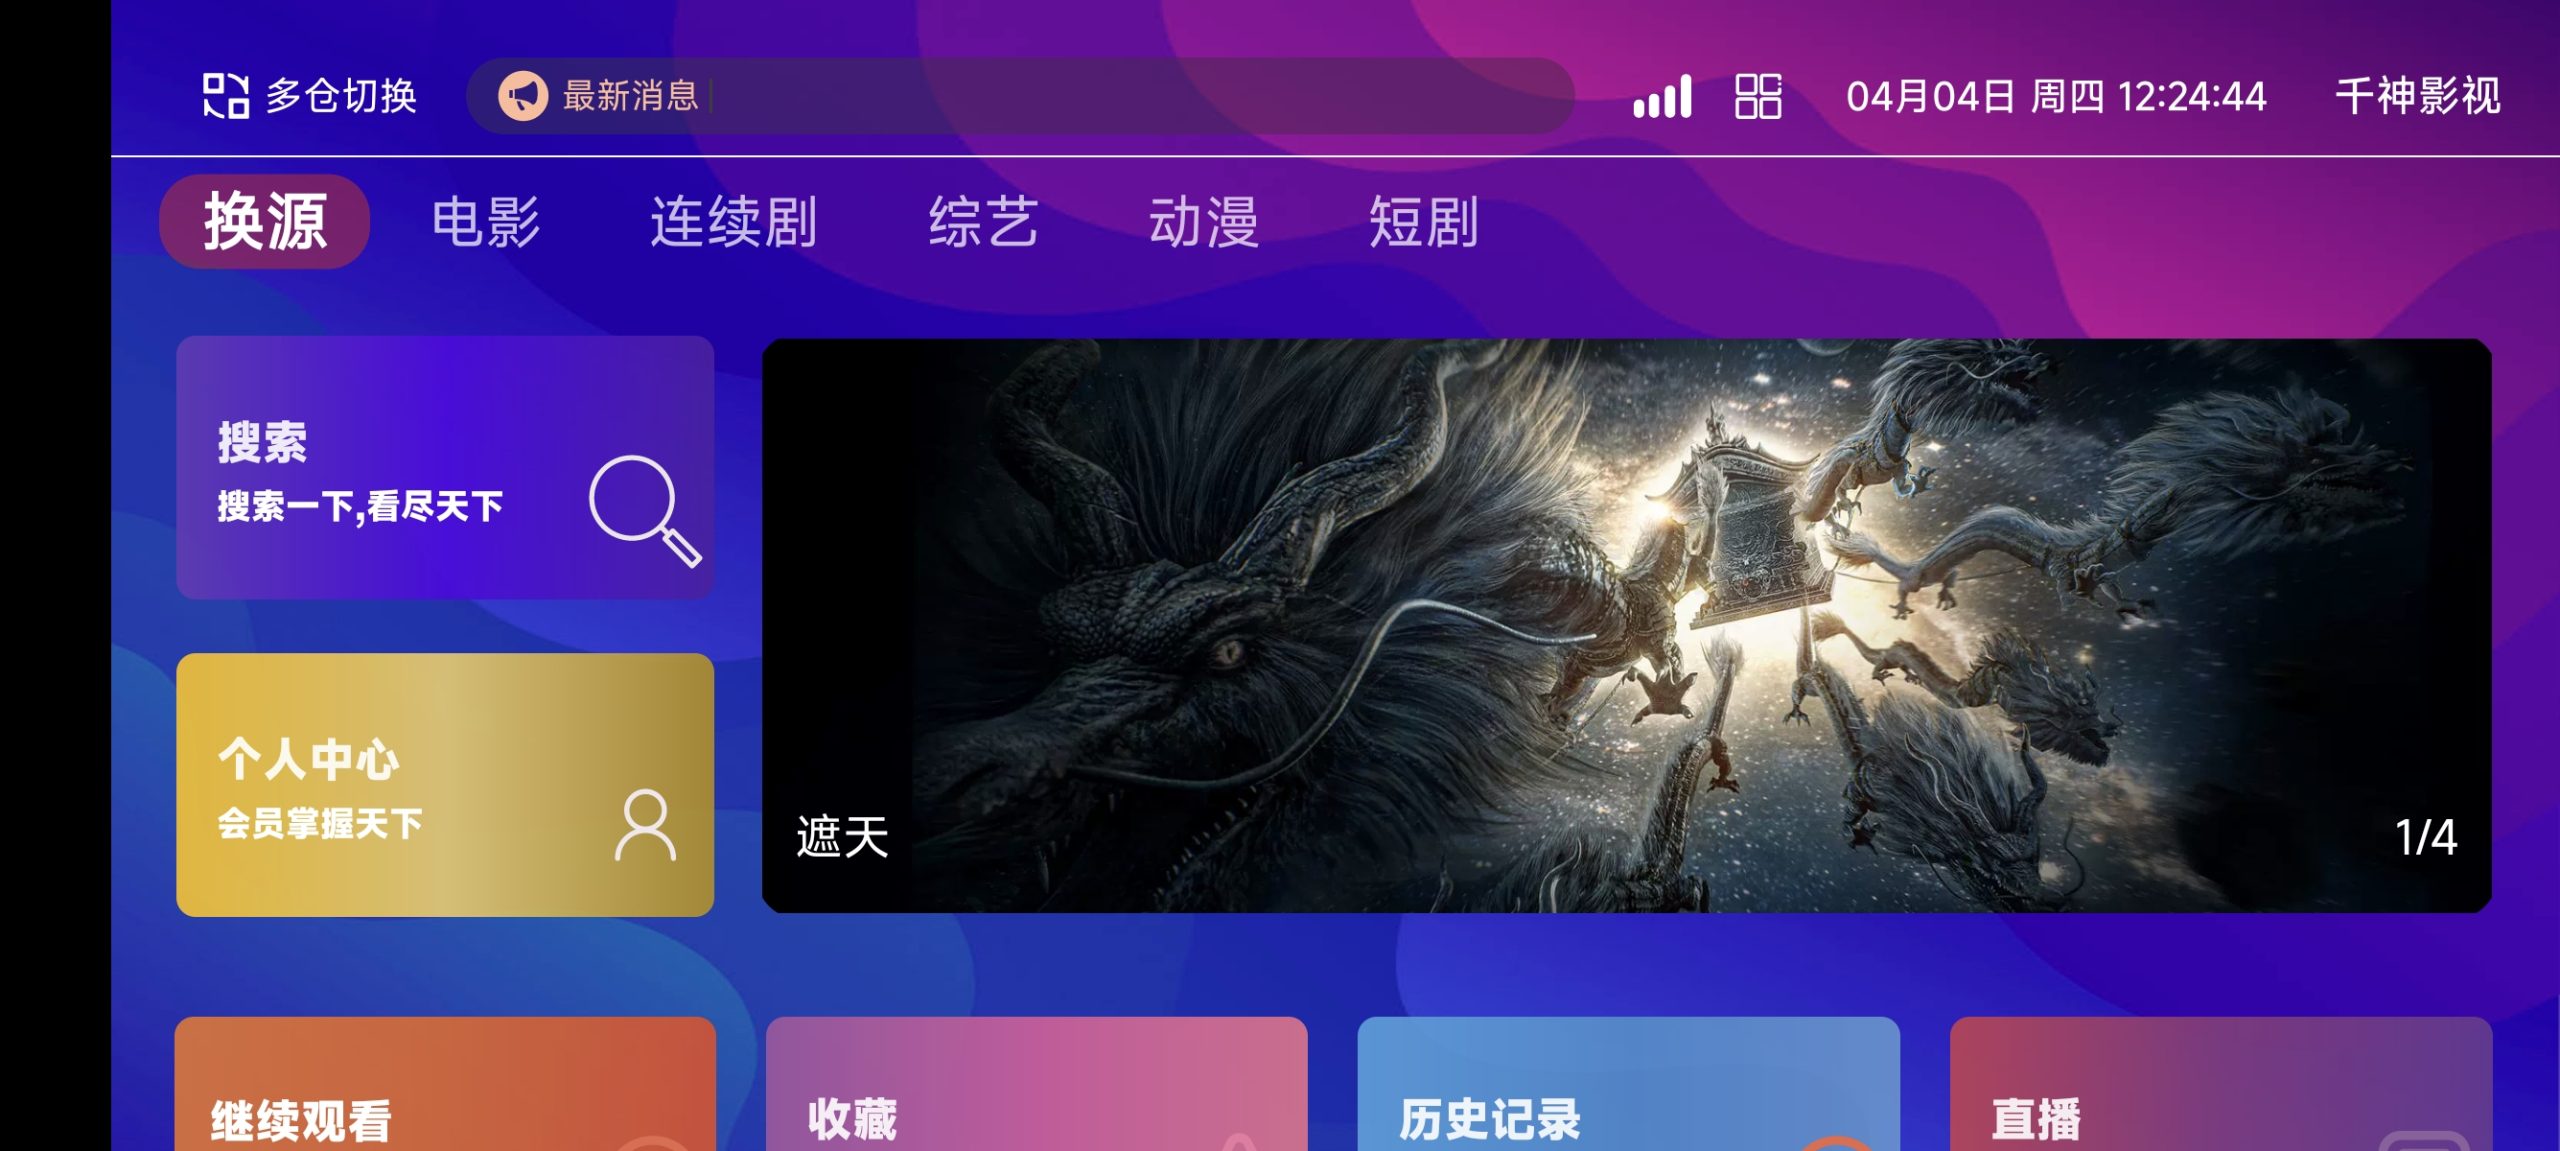 [已测试]TVBox二次开发影视系统酷点1.4.4反编译版本-倾慕云小窝